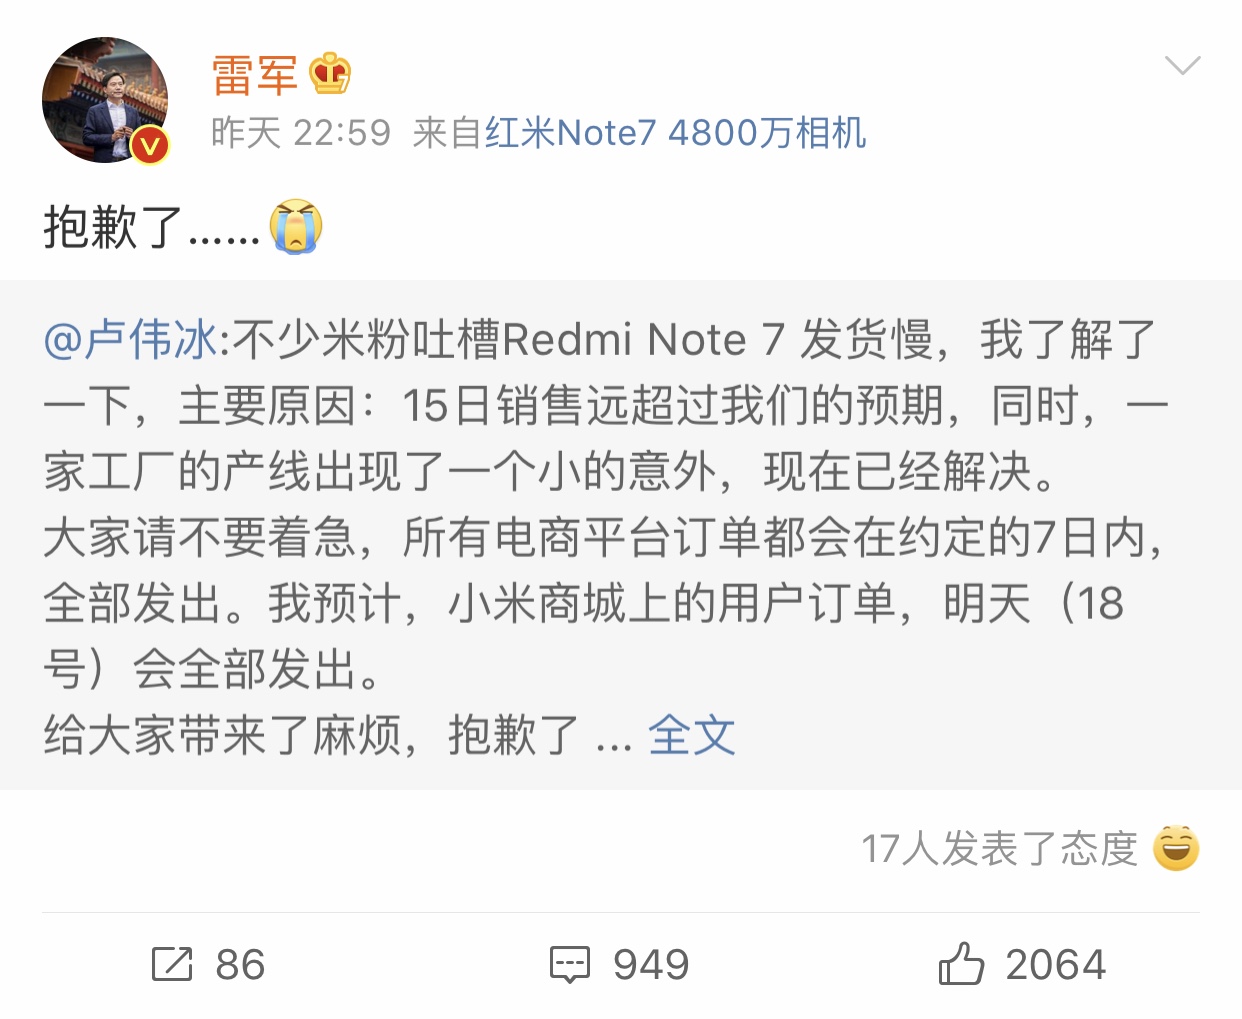 首批Redmi Note 7发货慢 雷军发微博致歉